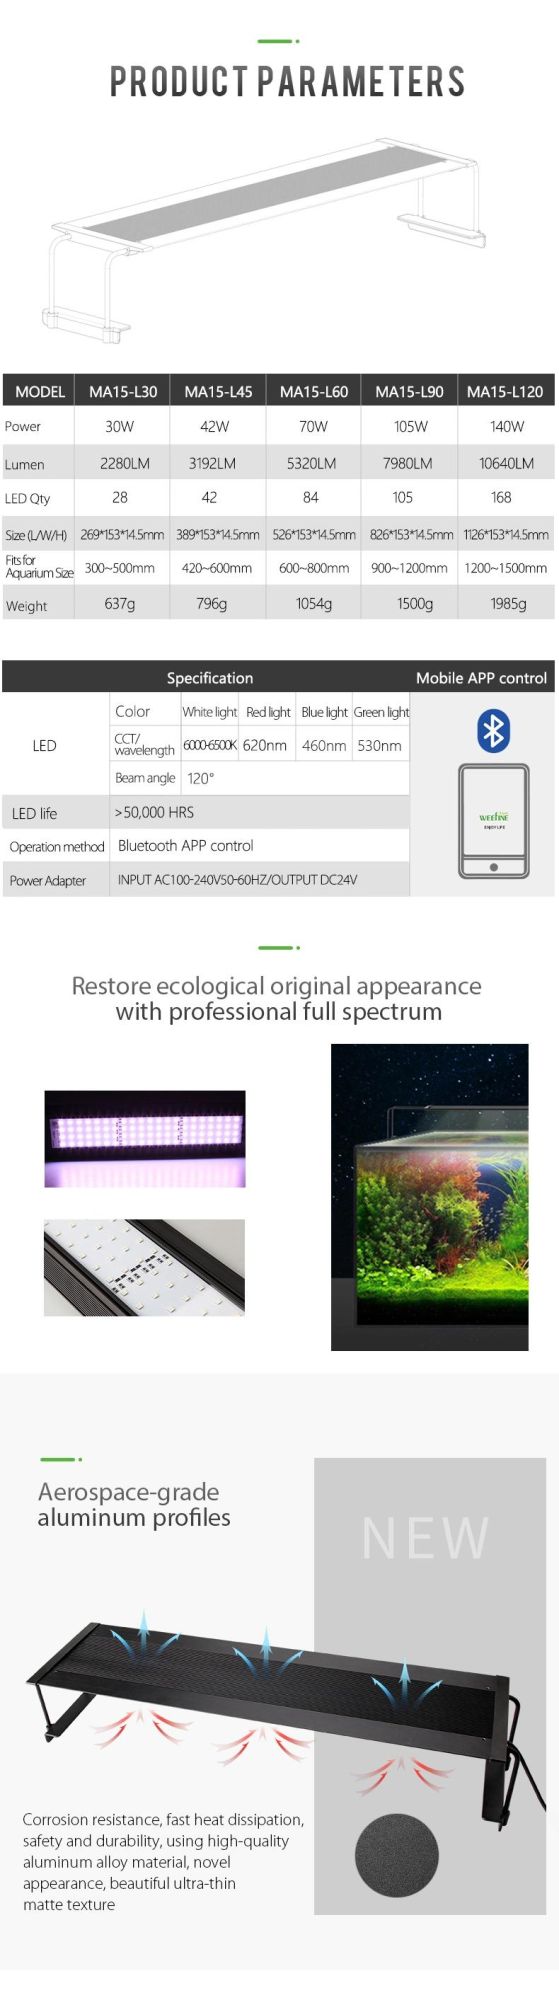 30W Wrgb Customized LED Aquarium Lights for Ultra-Thin Body Design (MA15)